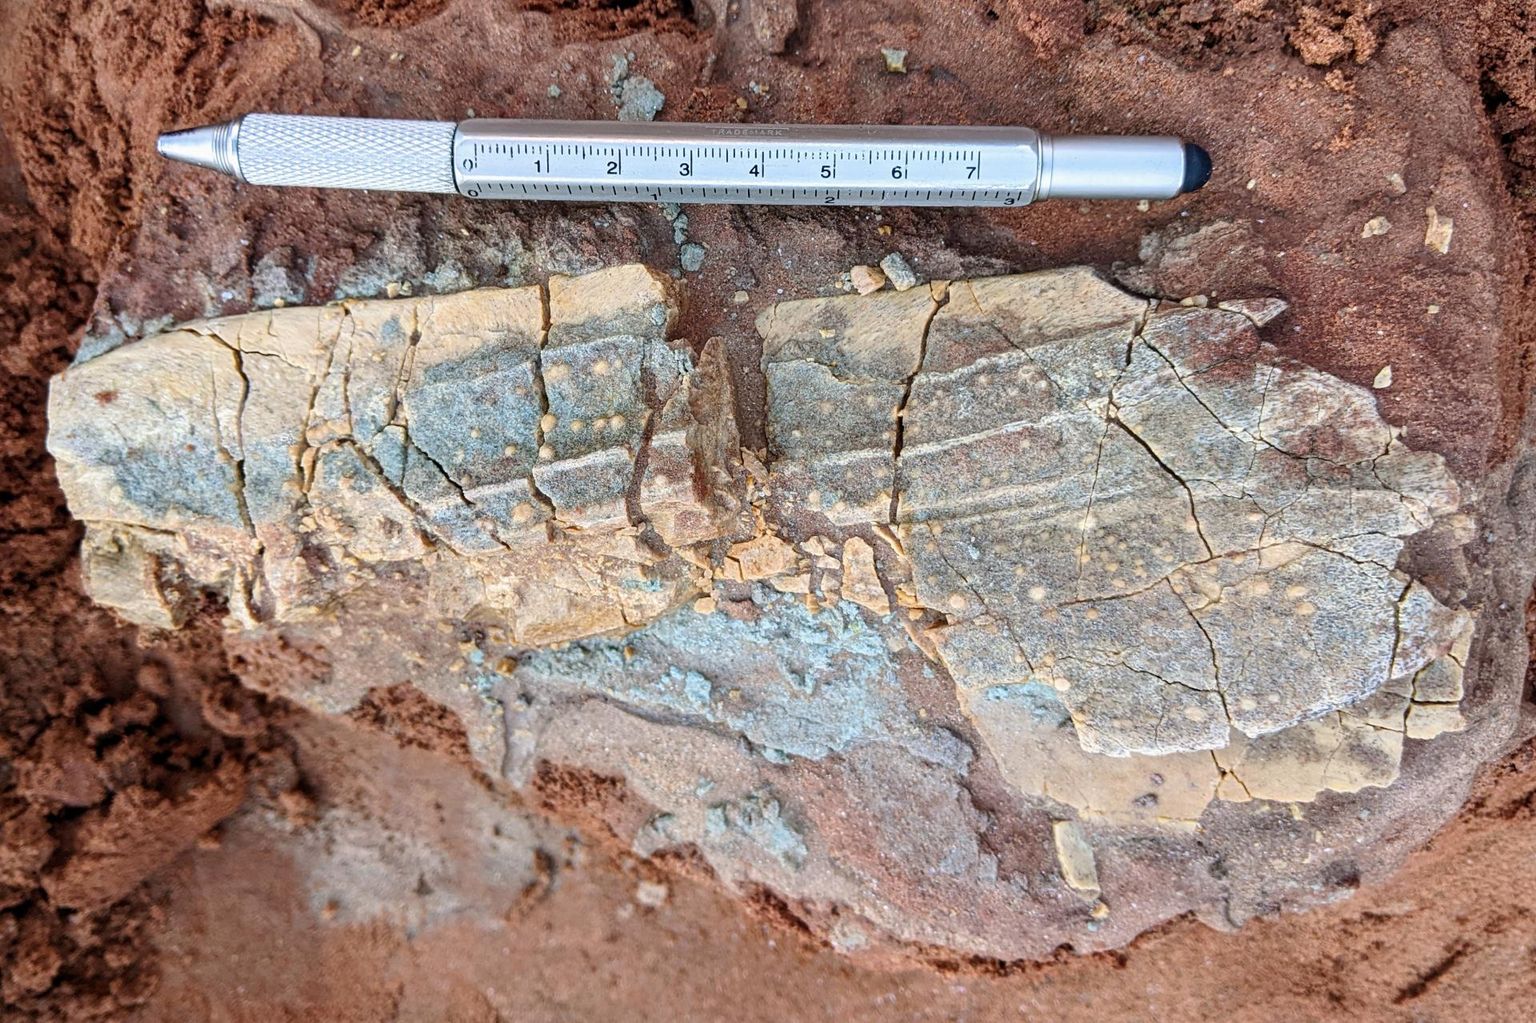 Kivistise suurus ja selle peal olevat mügarikud lubavad aimata, et luu kuulub 380 miljonit aastat tagasi elanud hiiglasliku Heterostiuse perekonna rüükalale. Selle eluka luid leidub vaid Põhja-Euroopa ja Gröönimaa pinnas.